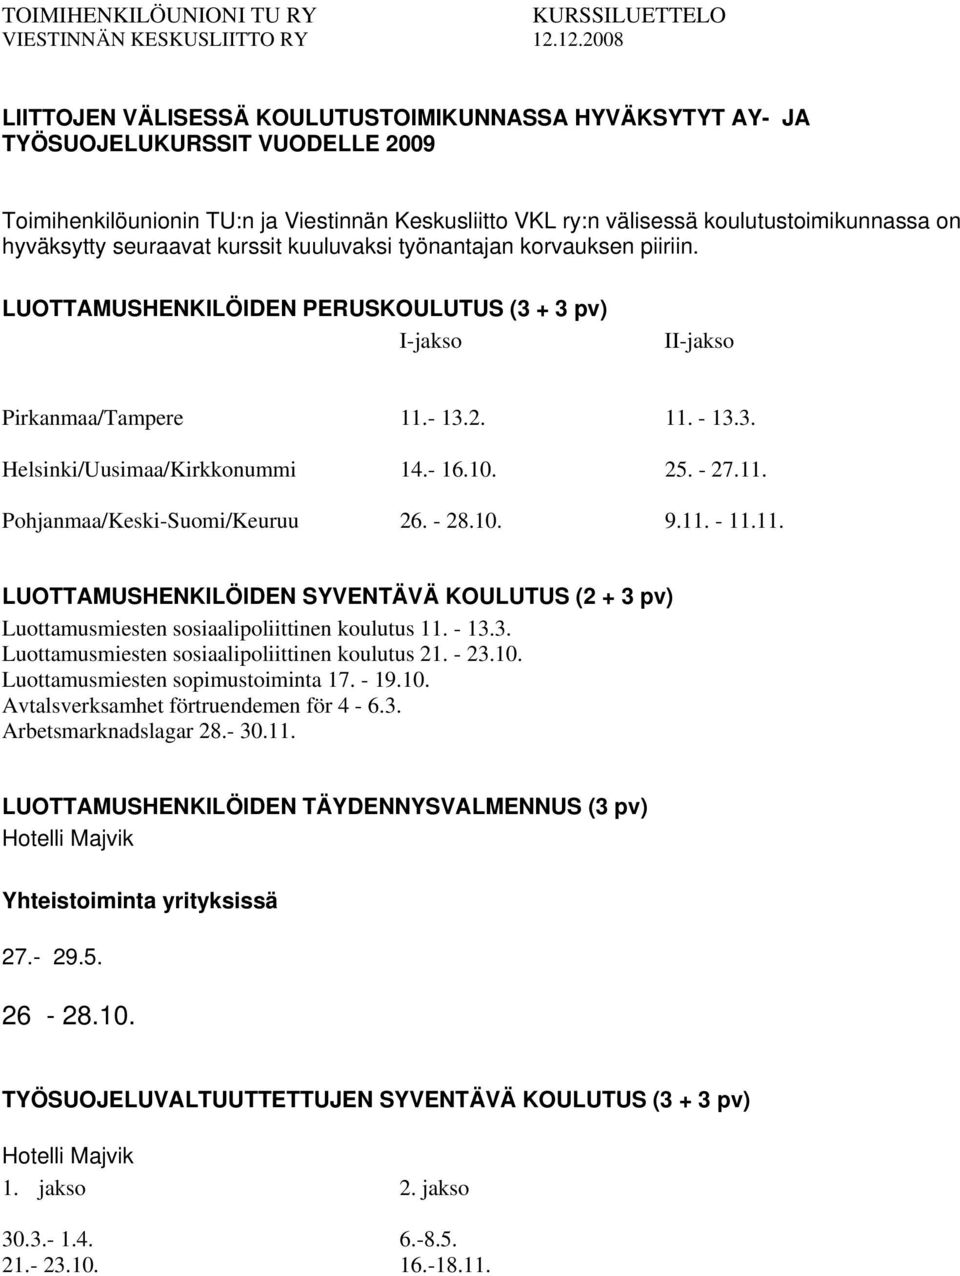 hyväksytty seuraavat kurssit kuuluvaksi työnantajan korvauksen piiriin. LUOTTAMUSHENKILÖIDEN PERUSKOULUTUS (3 + 3 pv) I-jakso II-jakso Pirkanmaa/Tampere 11.- 13.2. 11. - 13.3. Helsinki/Uusimaa/Kirkkonummi 14.